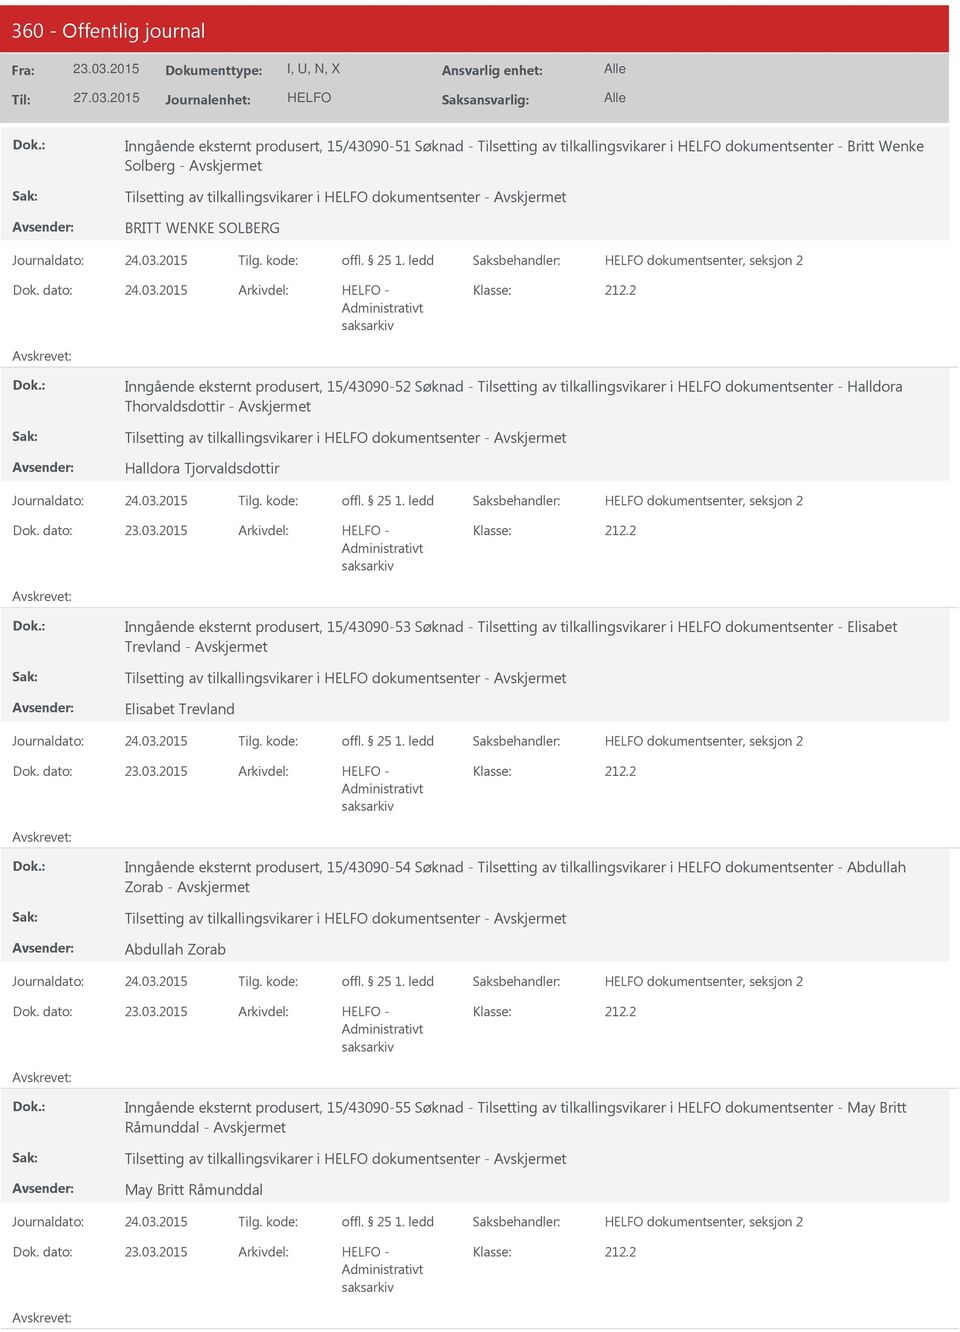 2015 - Inngående eksternt produsert, 15/43090-52 Søknad - Tilsetting av tilkallingsvikarer i dokumentsenter - Halldora Thorvaldsdottir - Tilsetting av tilkallingsvikarer i dokumentsenter - Halldora